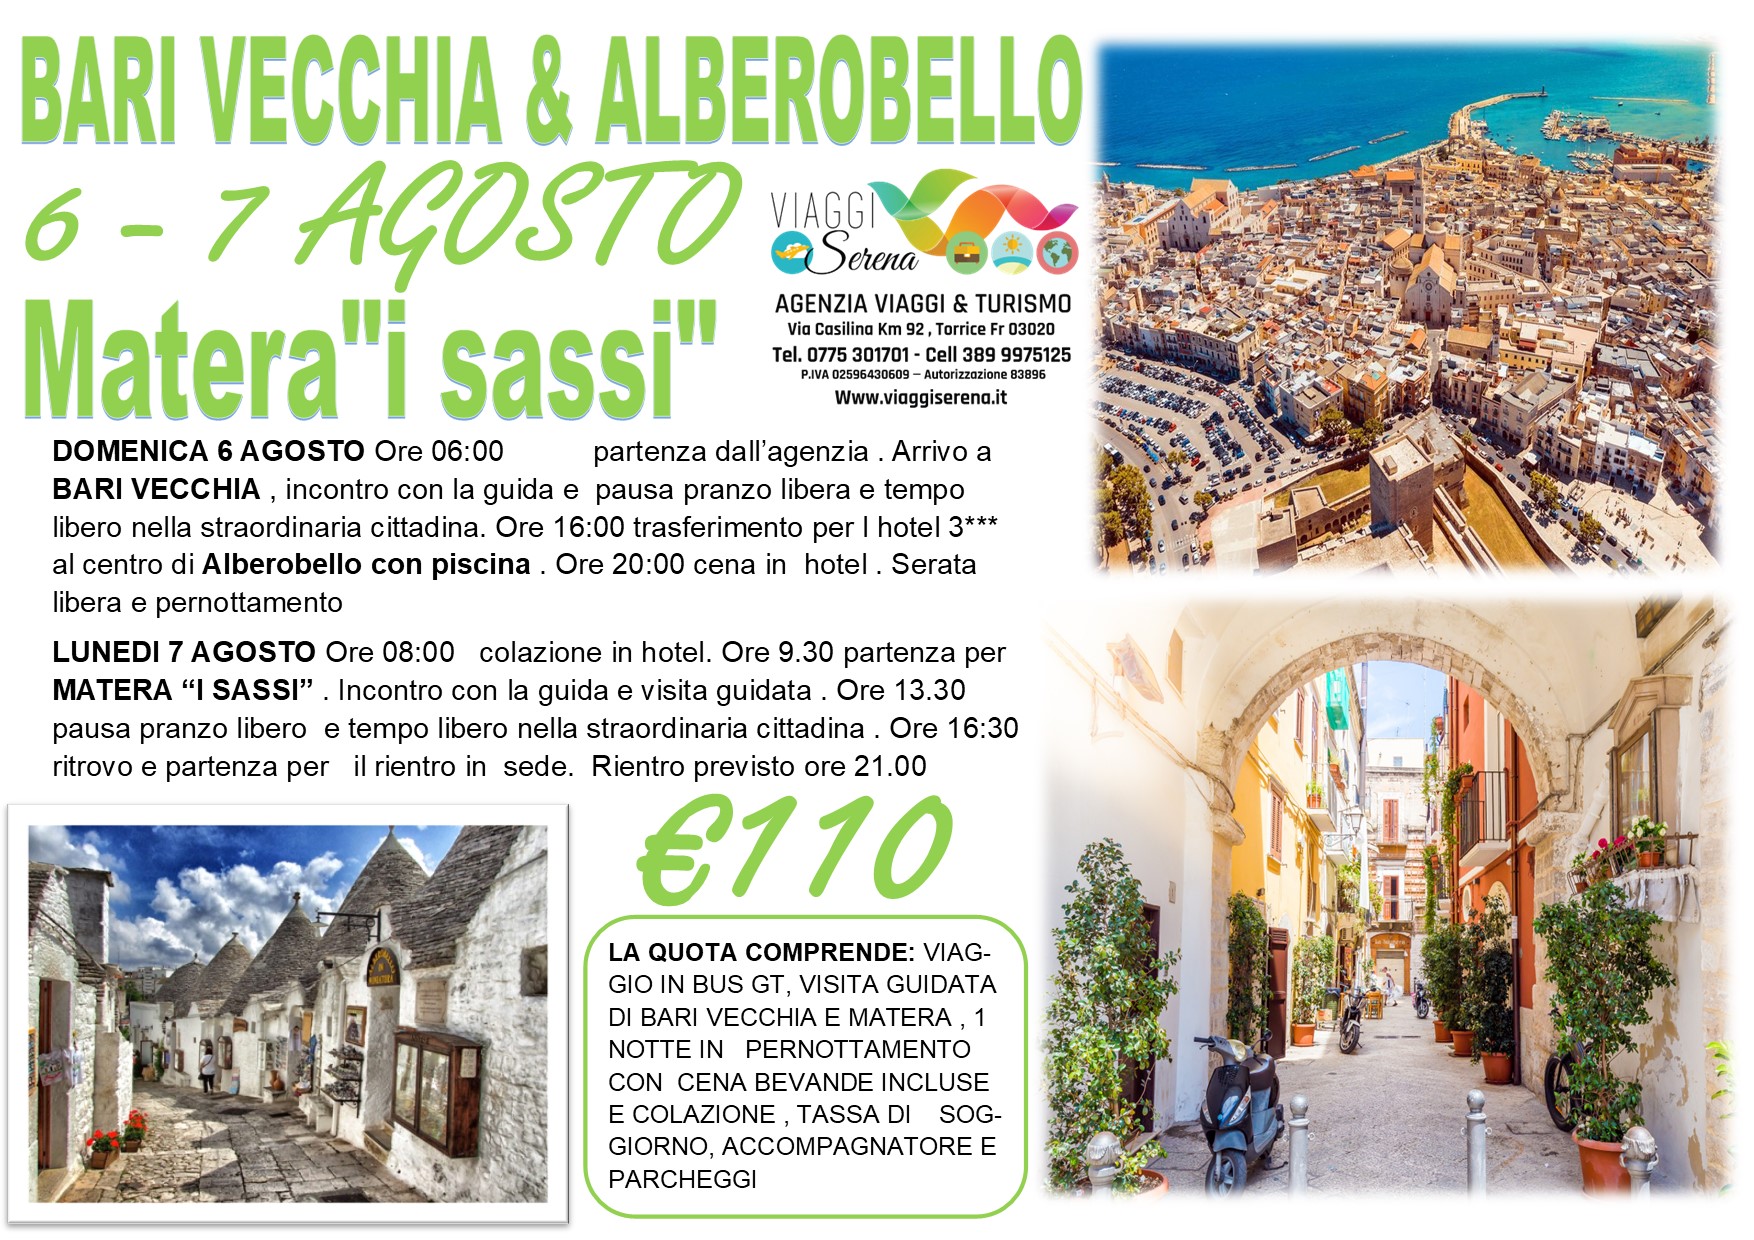 Viaggi di Gruppo: Puglia 2023 Alberobello, Bari Vecchia & Matera “i Sassi” 6-7 Agosto € 110,00